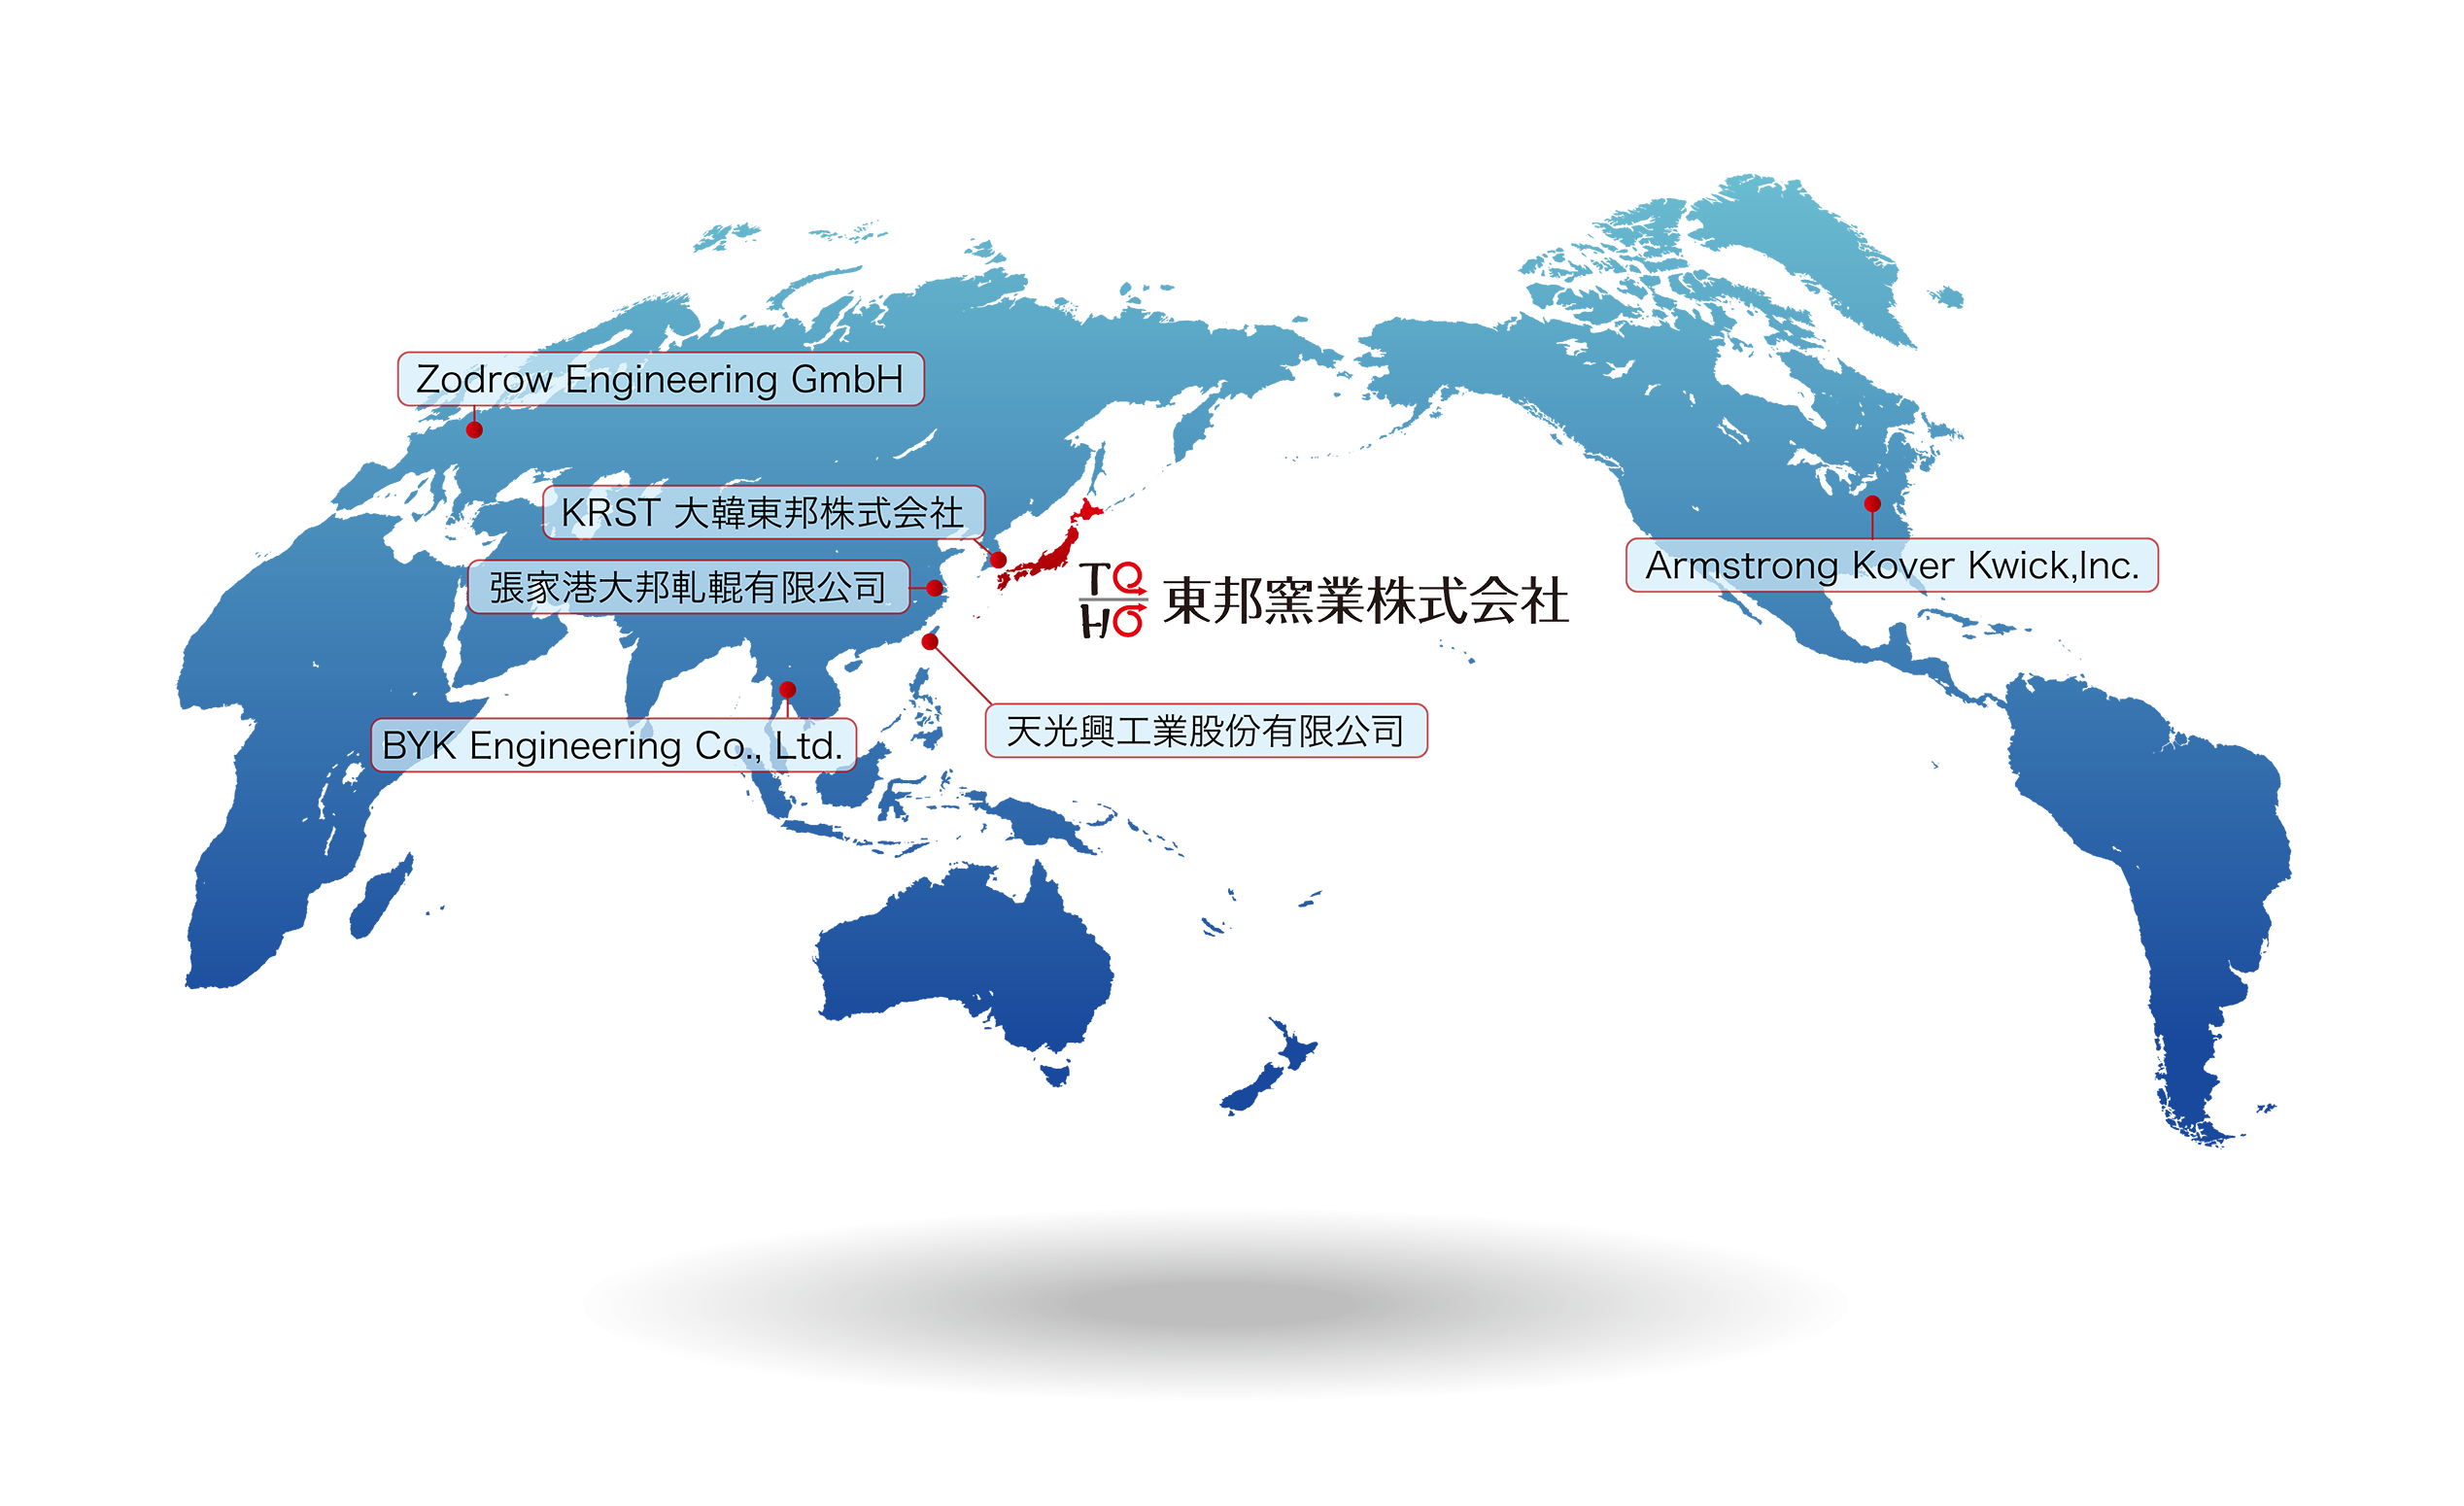 東邦窯業株式会社との海外提携会社の世界分布図（リンクなし）